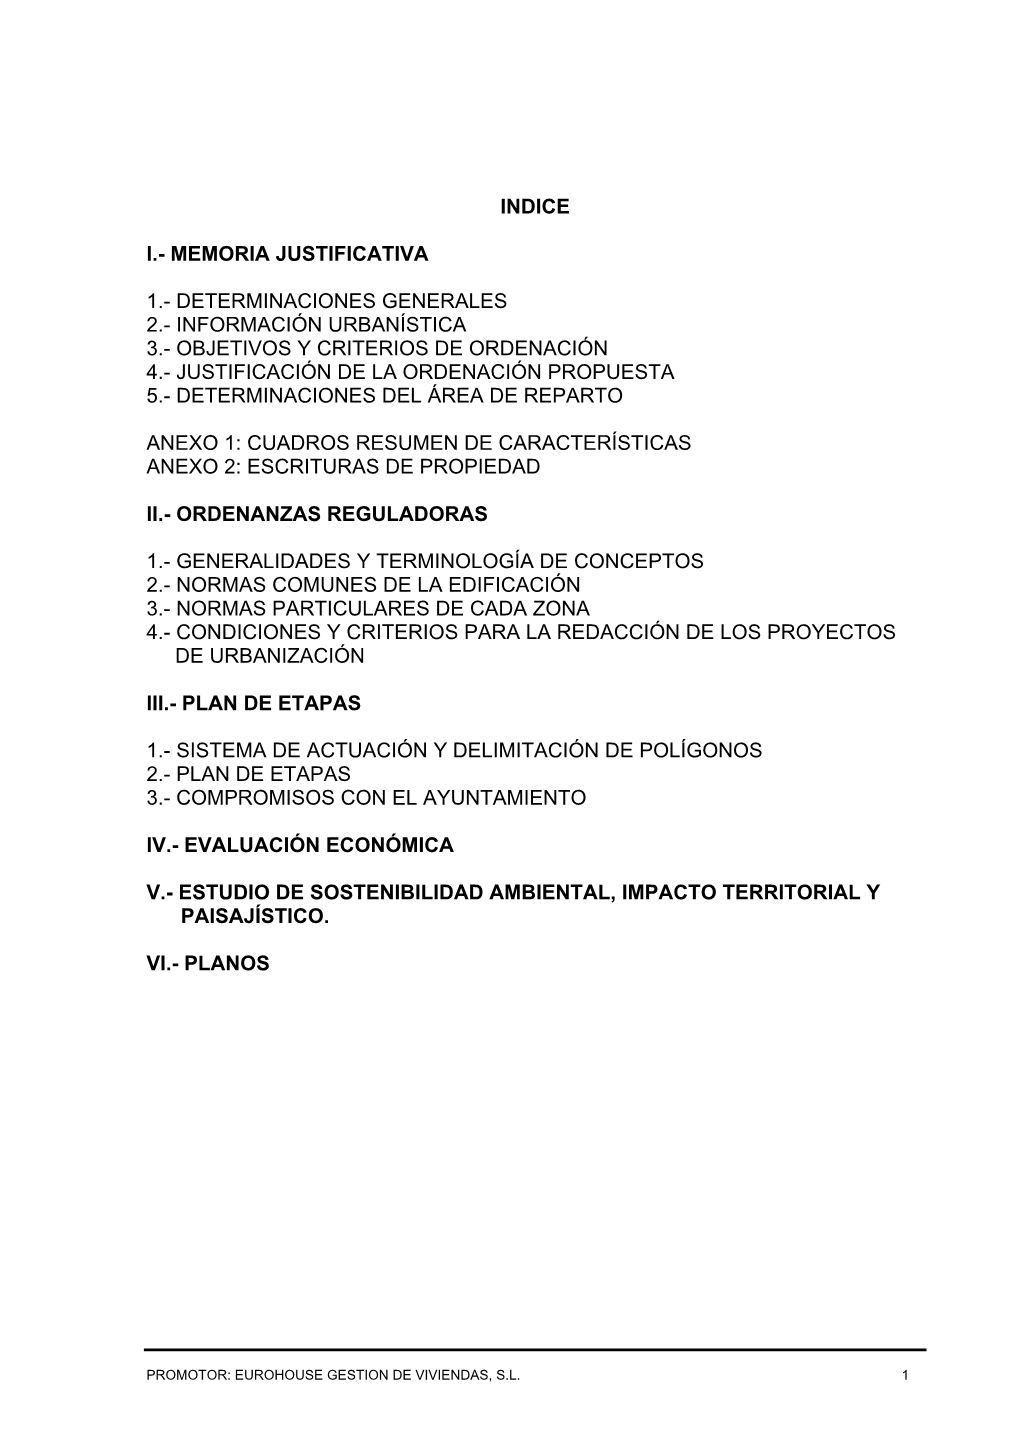 Información Urbanística 3.- Objetivos Y Criterios De Ordenación 4.- Justificación De La Ordenación Propuesta 5.- Determinaciones Del Área De Reparto